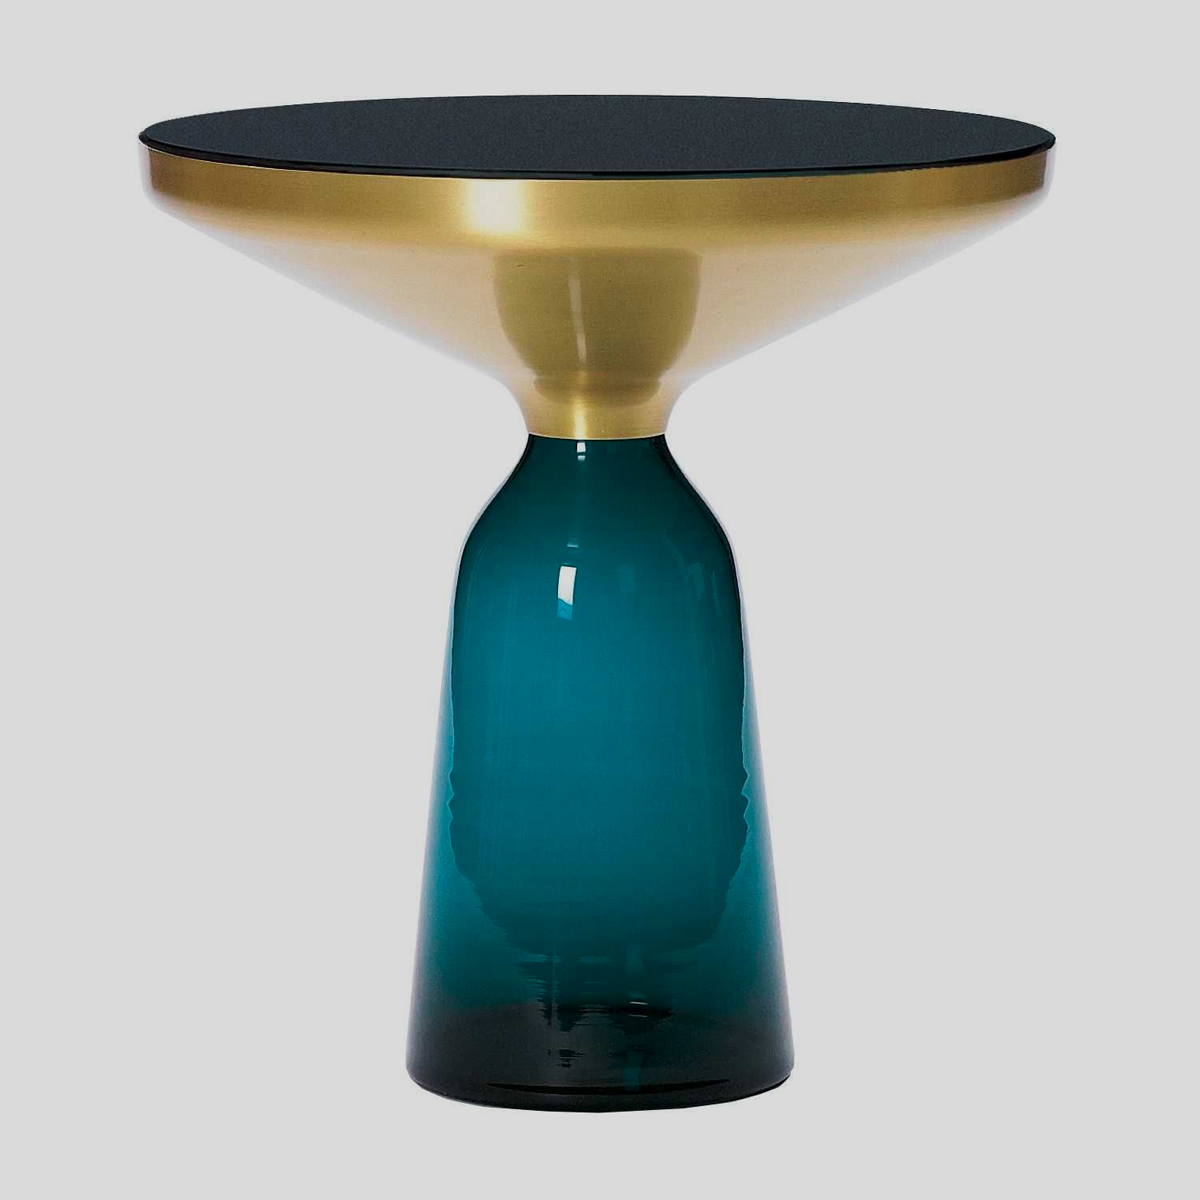 De Bell tafel is in 2012 ontworpen door Sebastian Herkner voor het merk ClassiCon. De glazen voet en het tafelblad van de iconische designtafel zorgen voor een spannend contrast. 